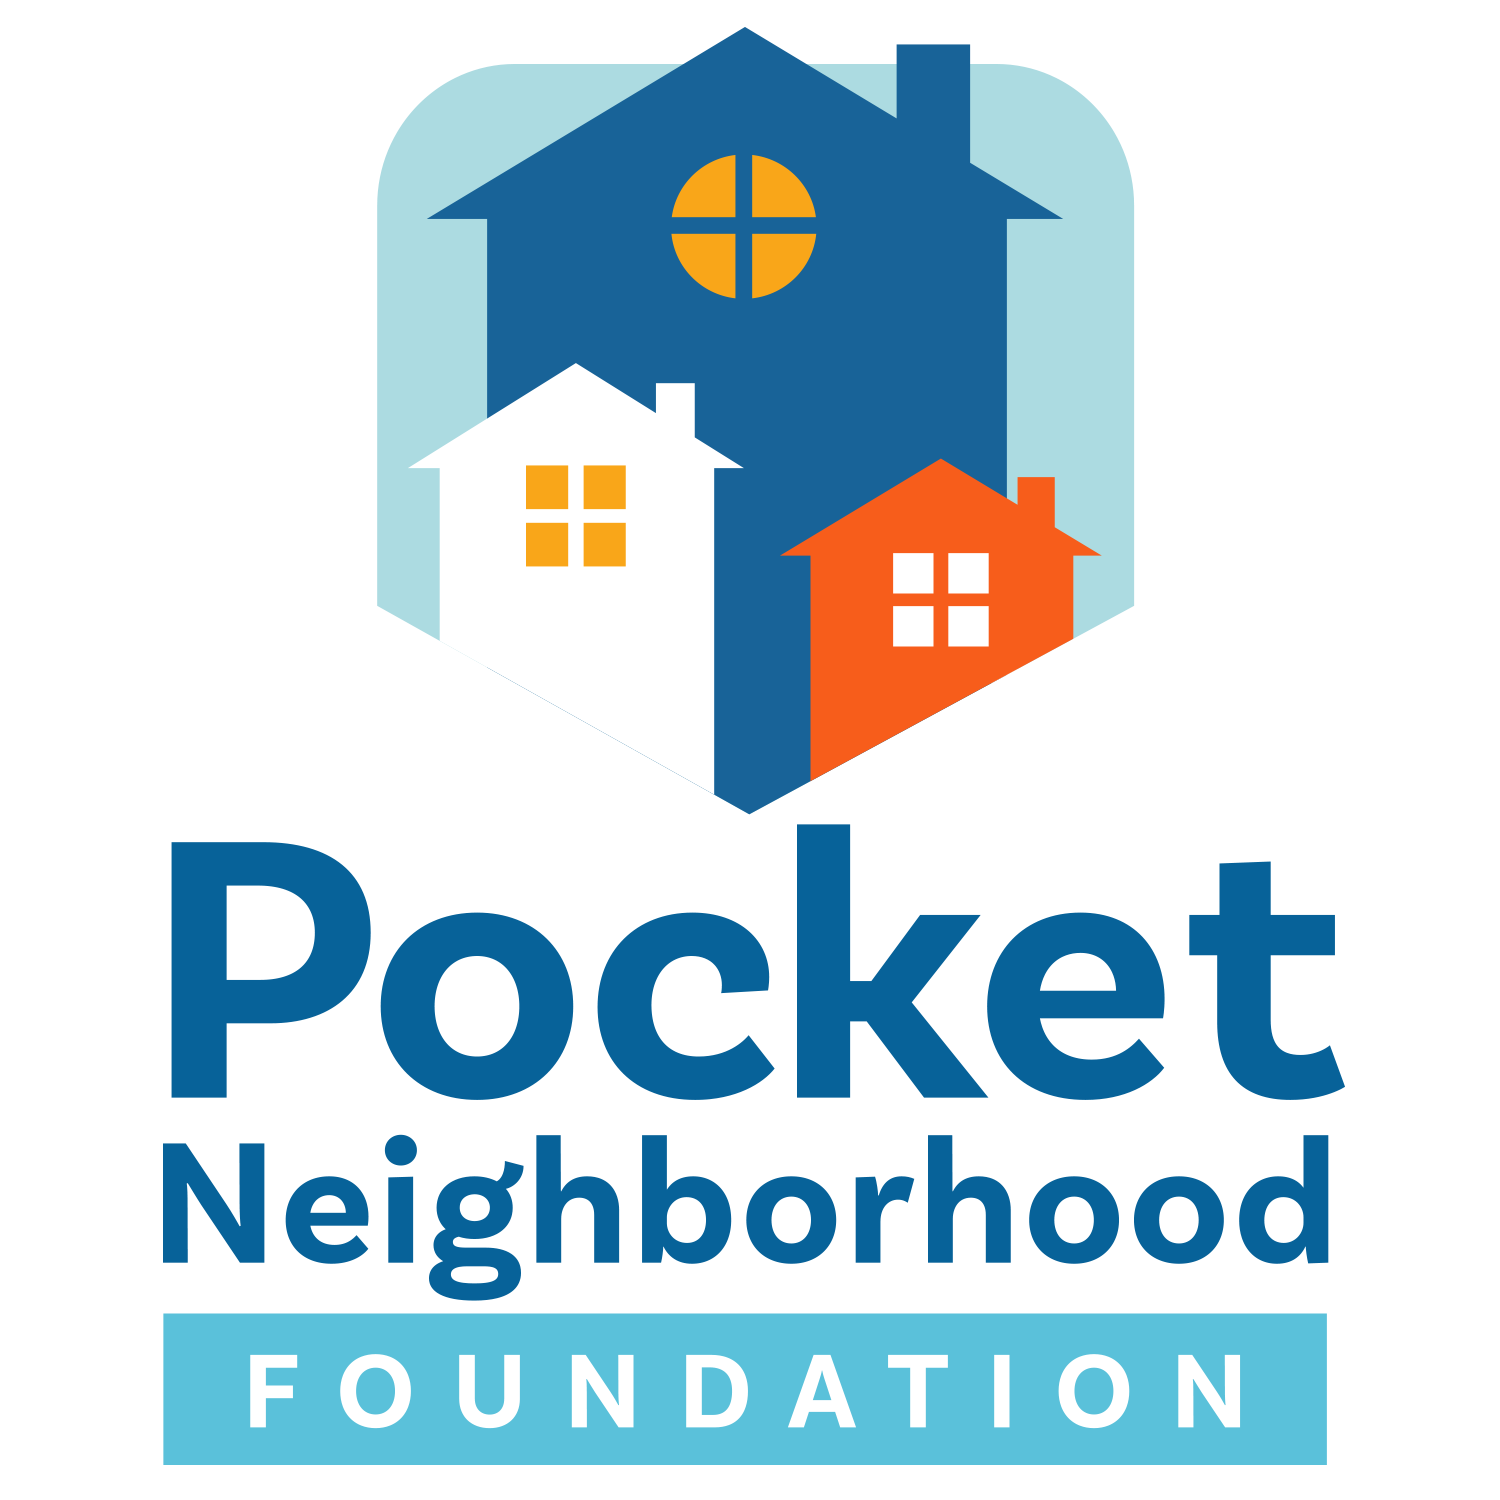 Pocket Neighborhood